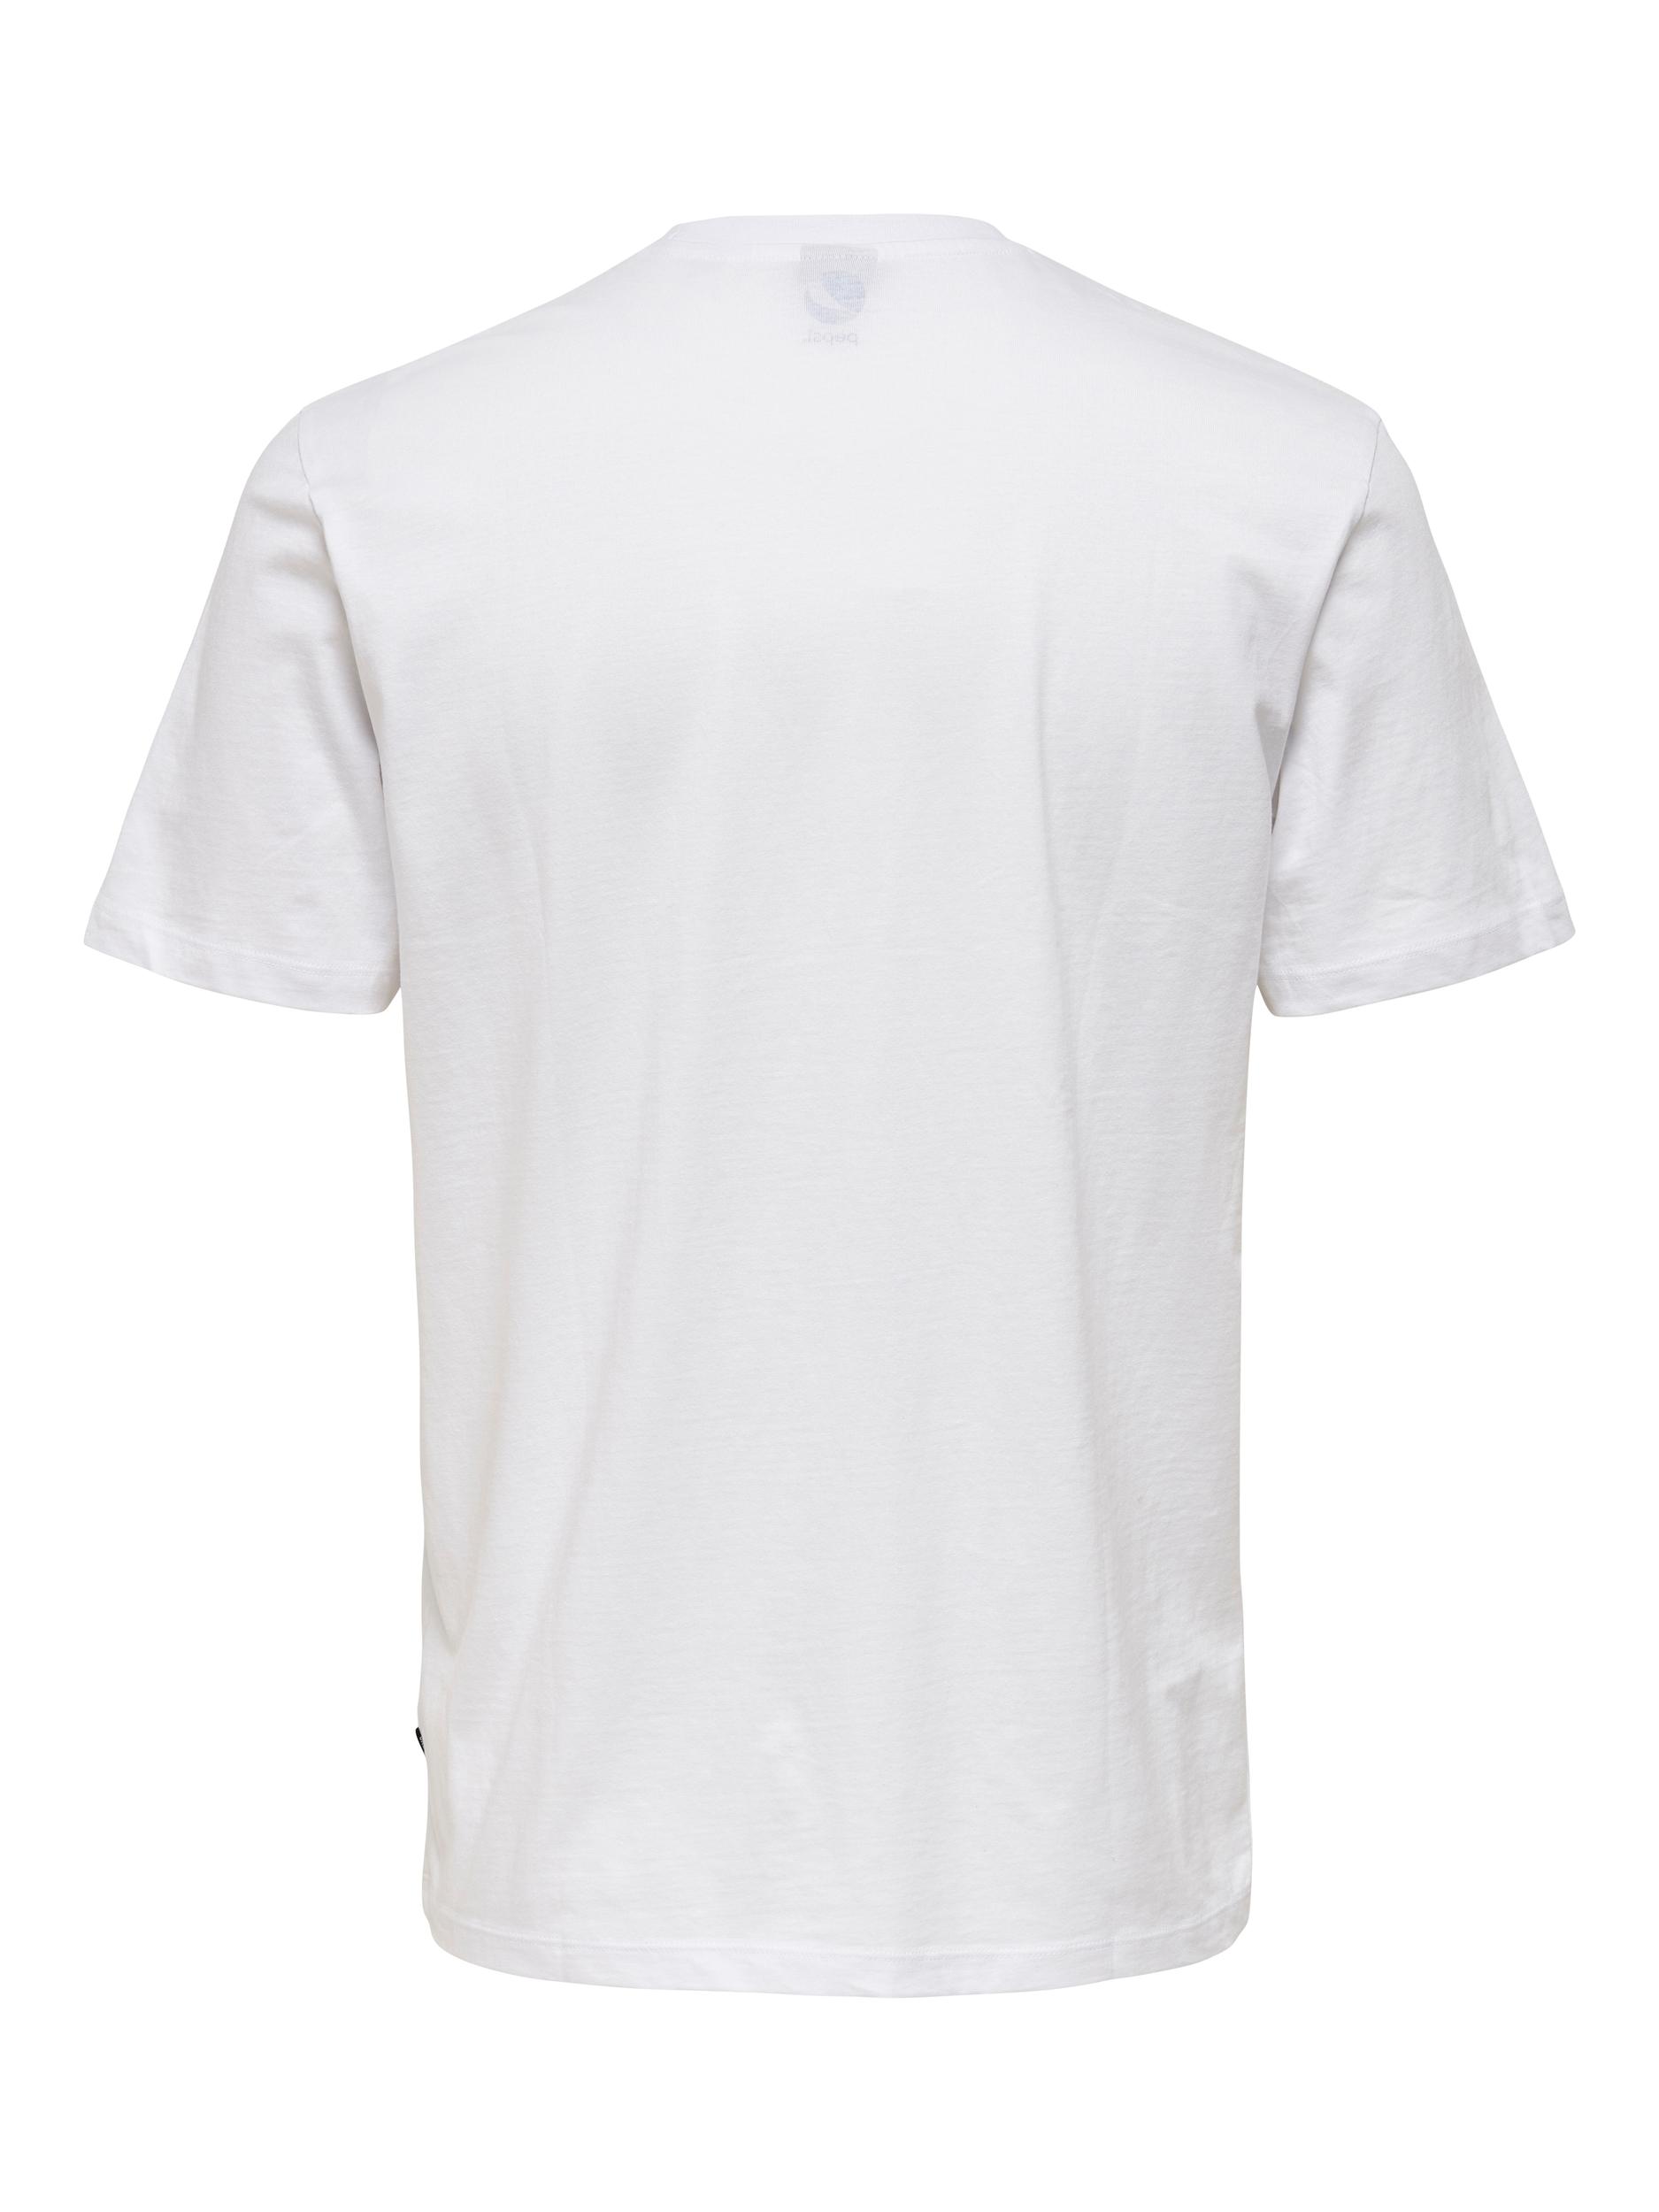 Pepsi T-shirt, Hvid, M